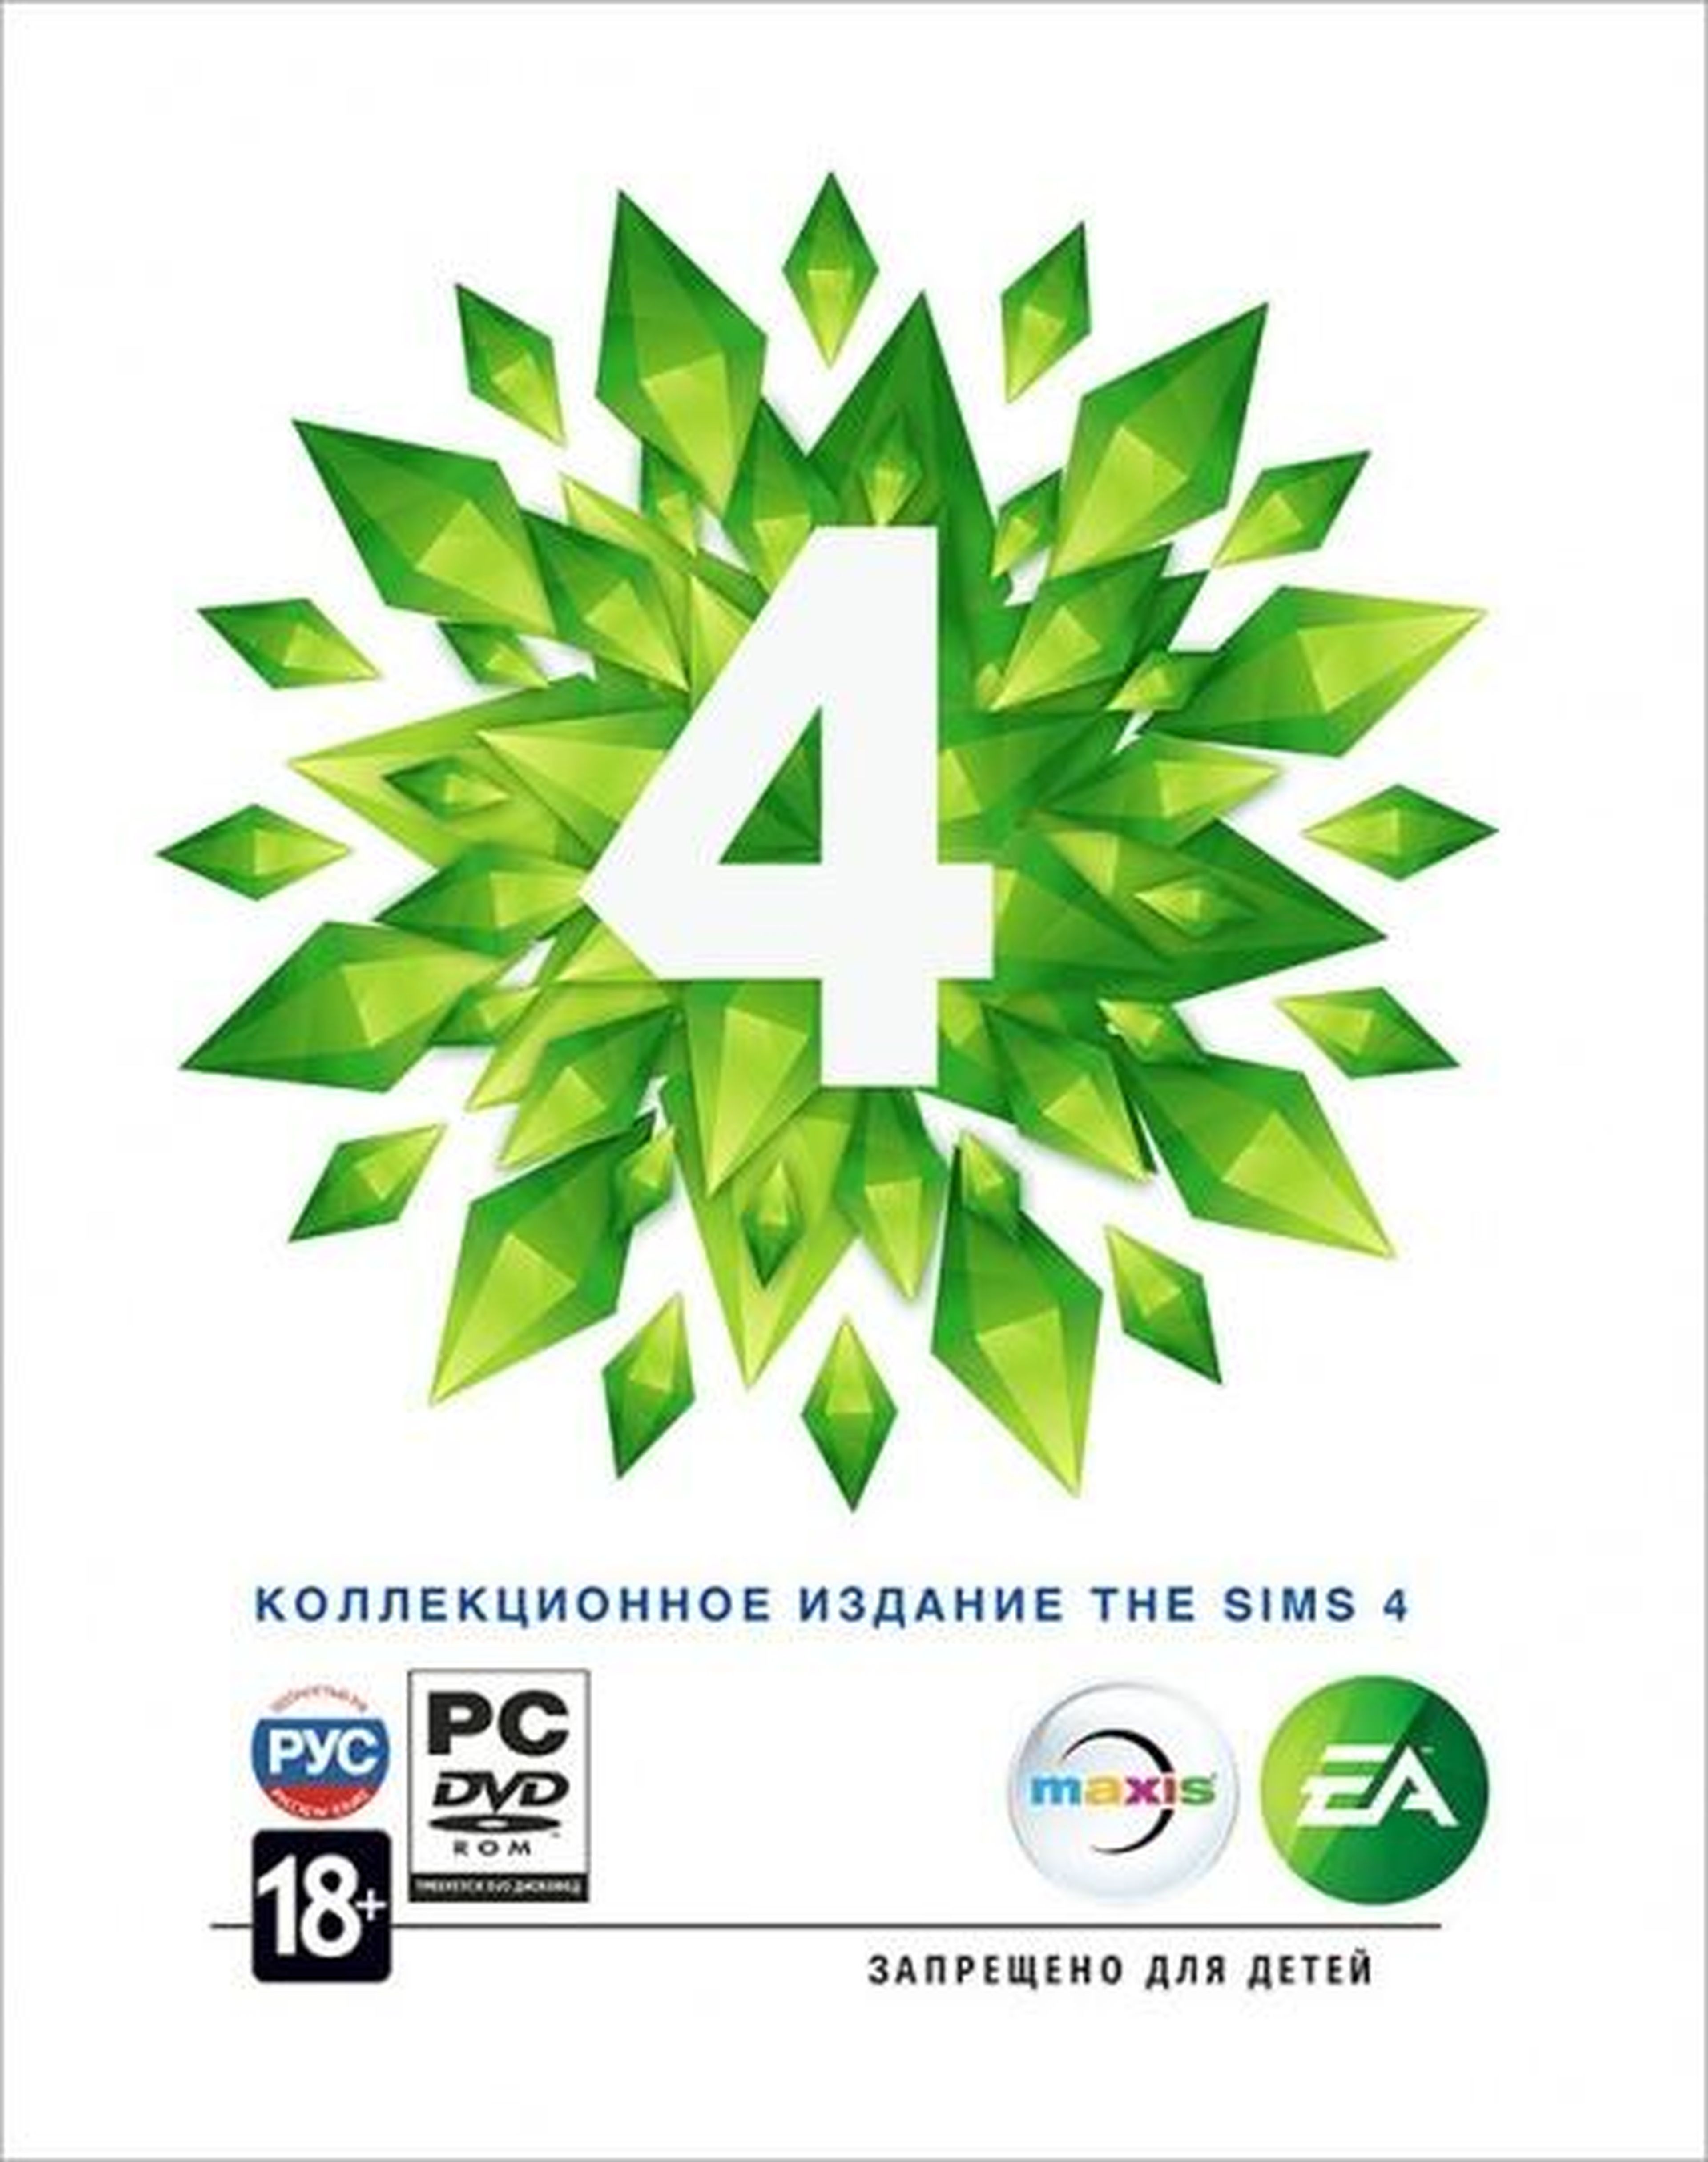 Los Sims 4 será para mayores de 18 años sólo en Rusia